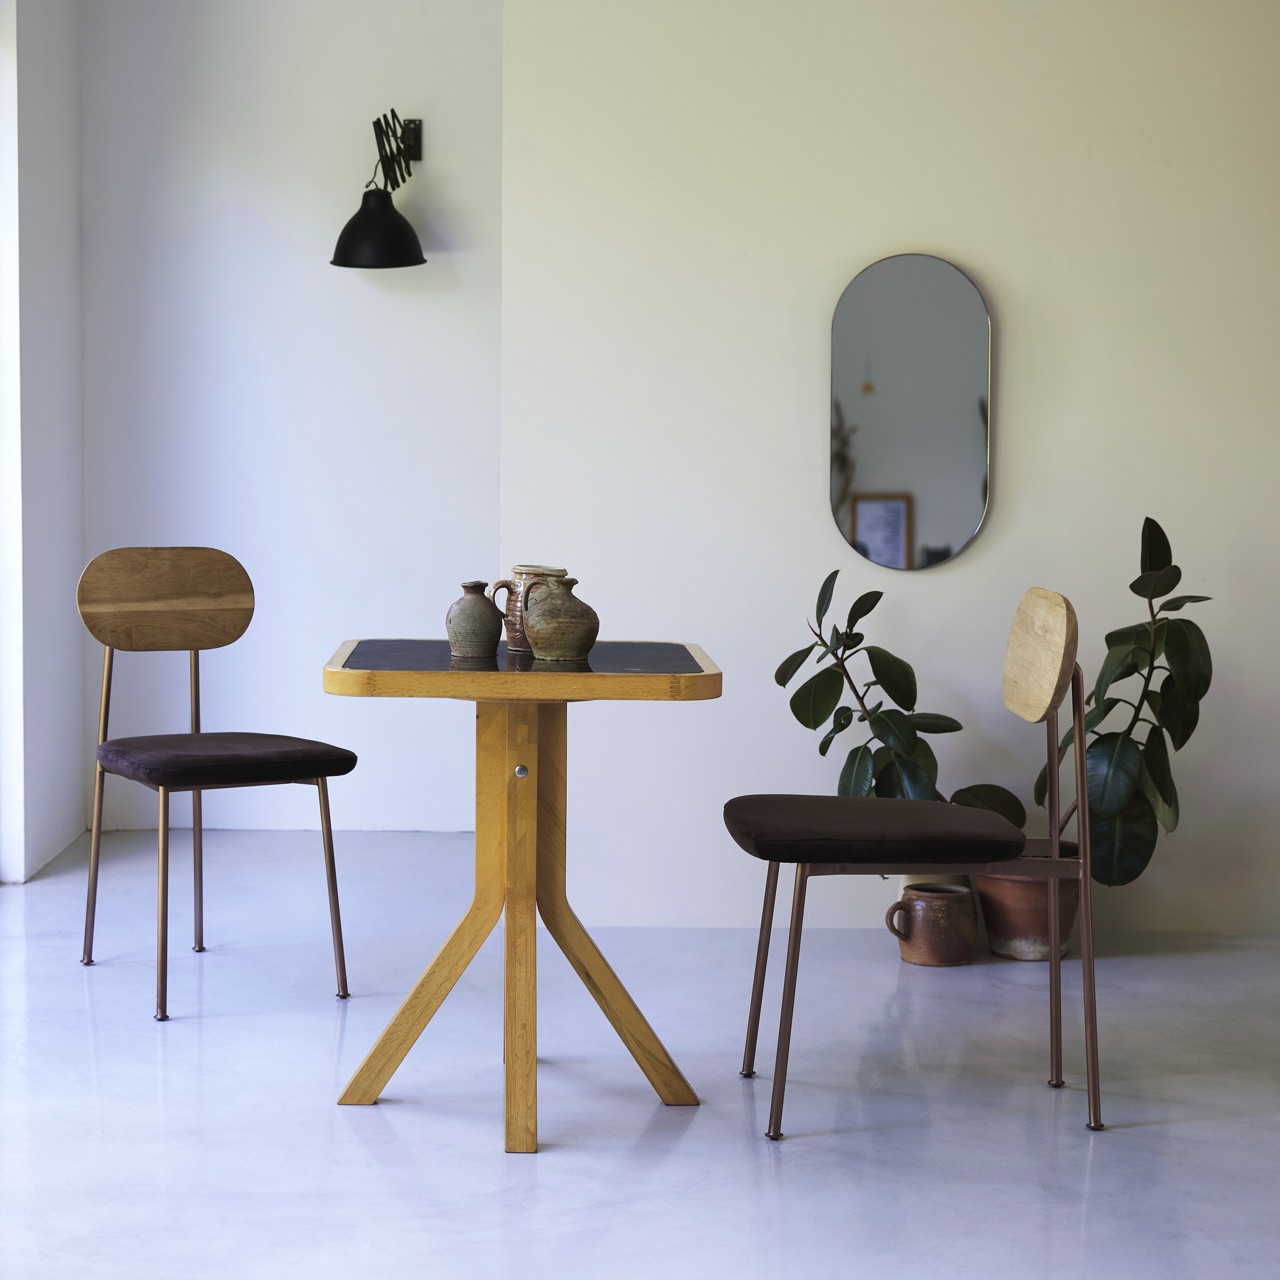 Was für ein hübscher Tisch in Caféhaus-Optik. Die Stühle sind sehr individuell mit ihrem prägnanten Design. Alles von Tikamoon.